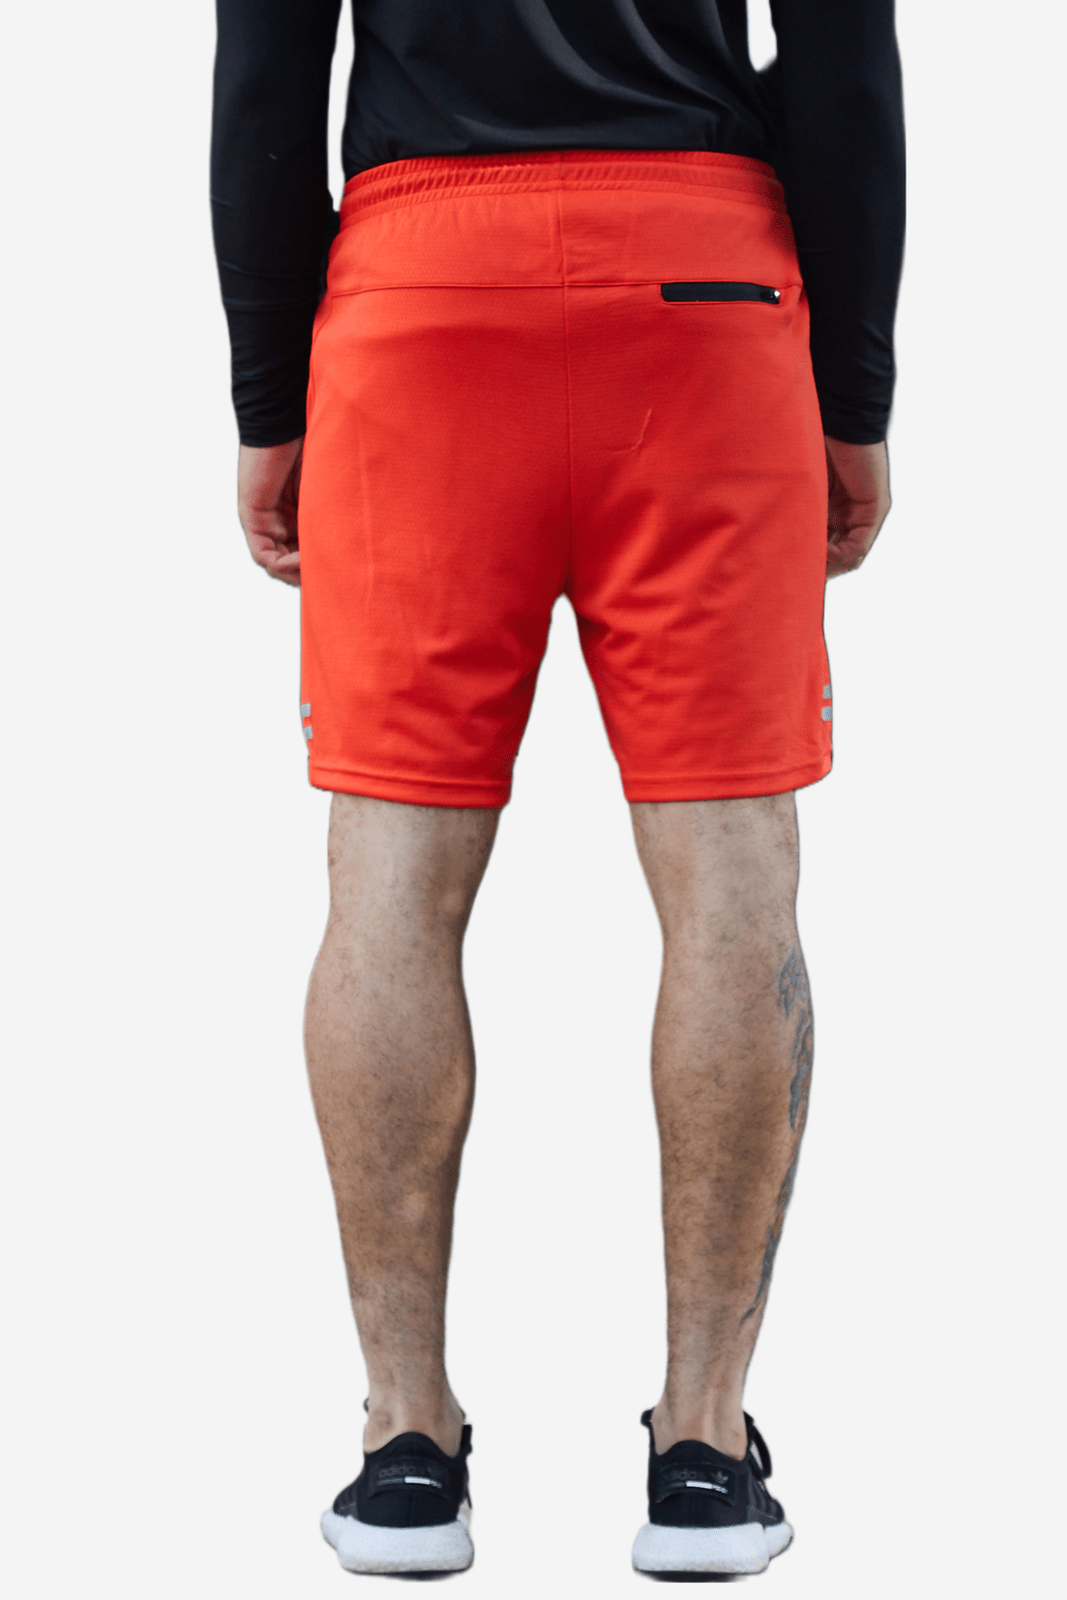 Pantaloneta deportiva naranja fondo entero, bolsillos laterales y bolsillo en posterior con cierre para hombre